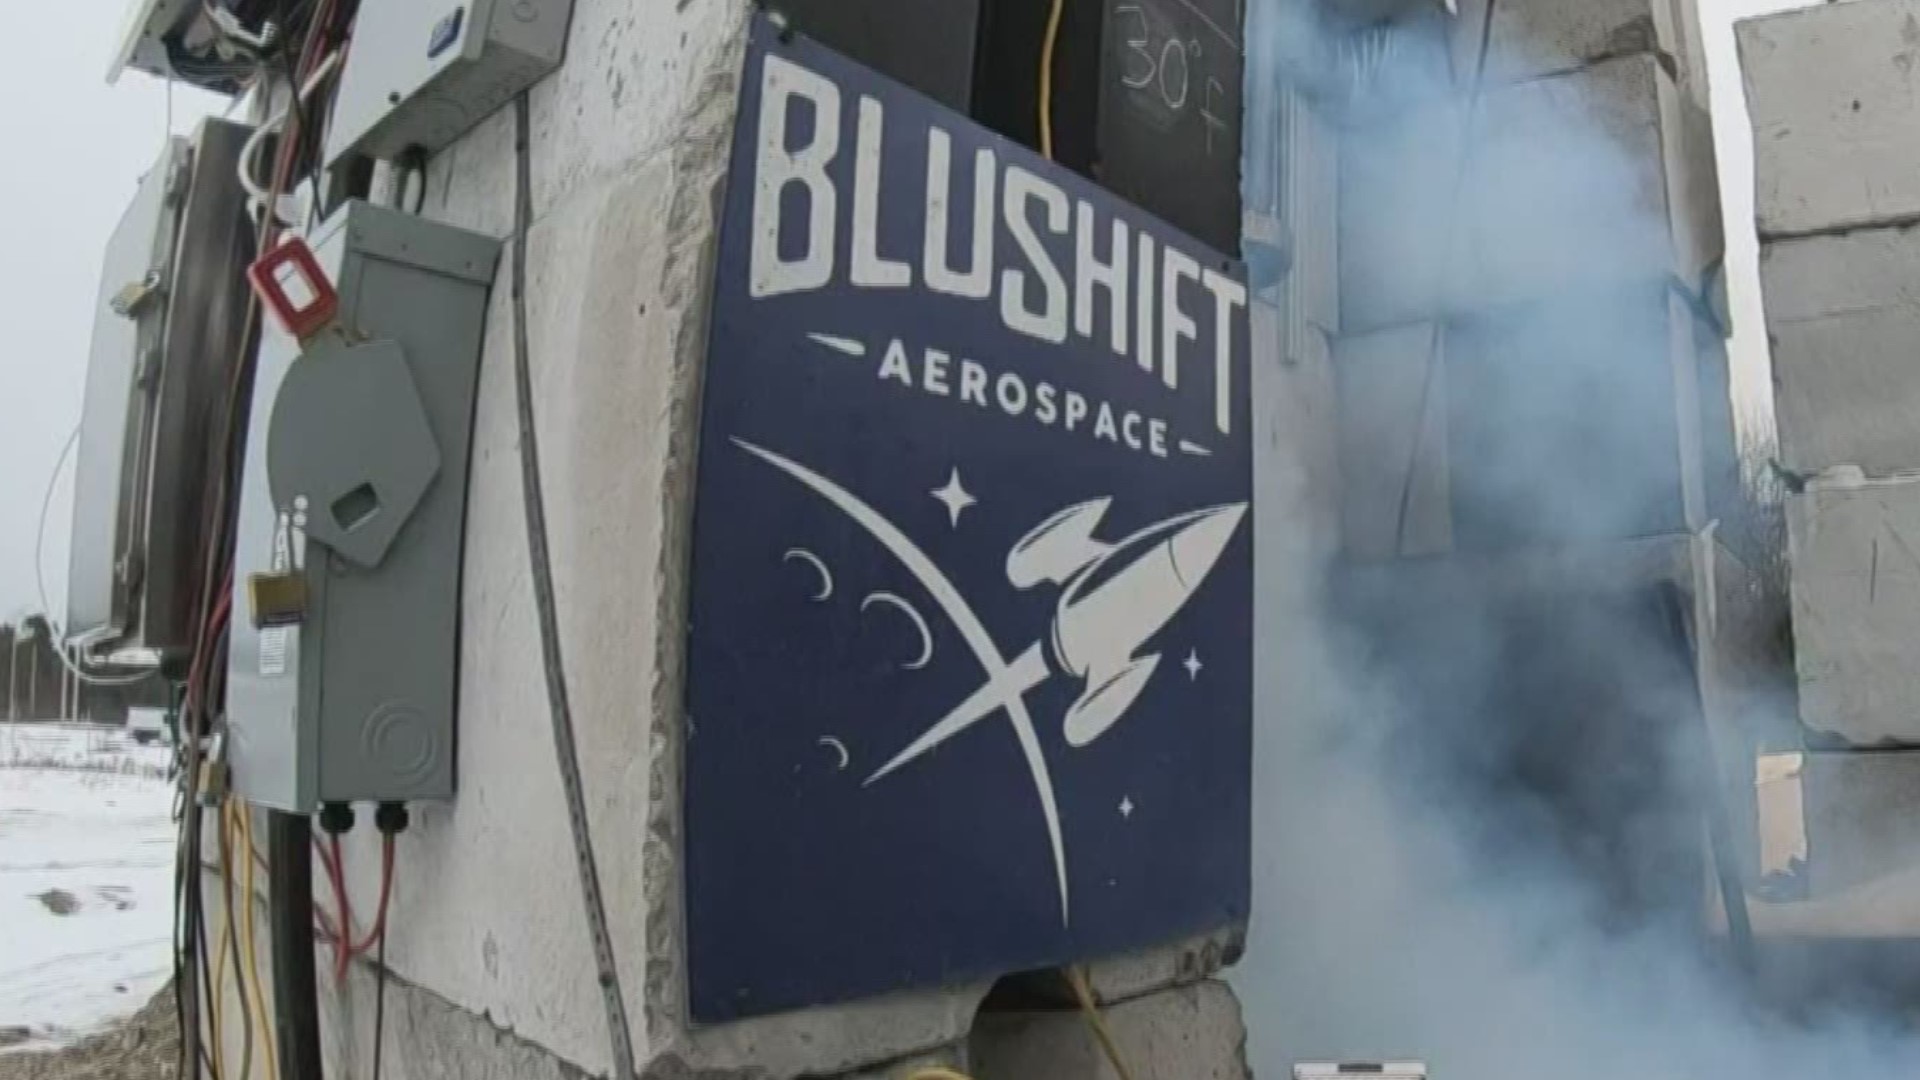 BluShift aerospace tests larger rocket engine.